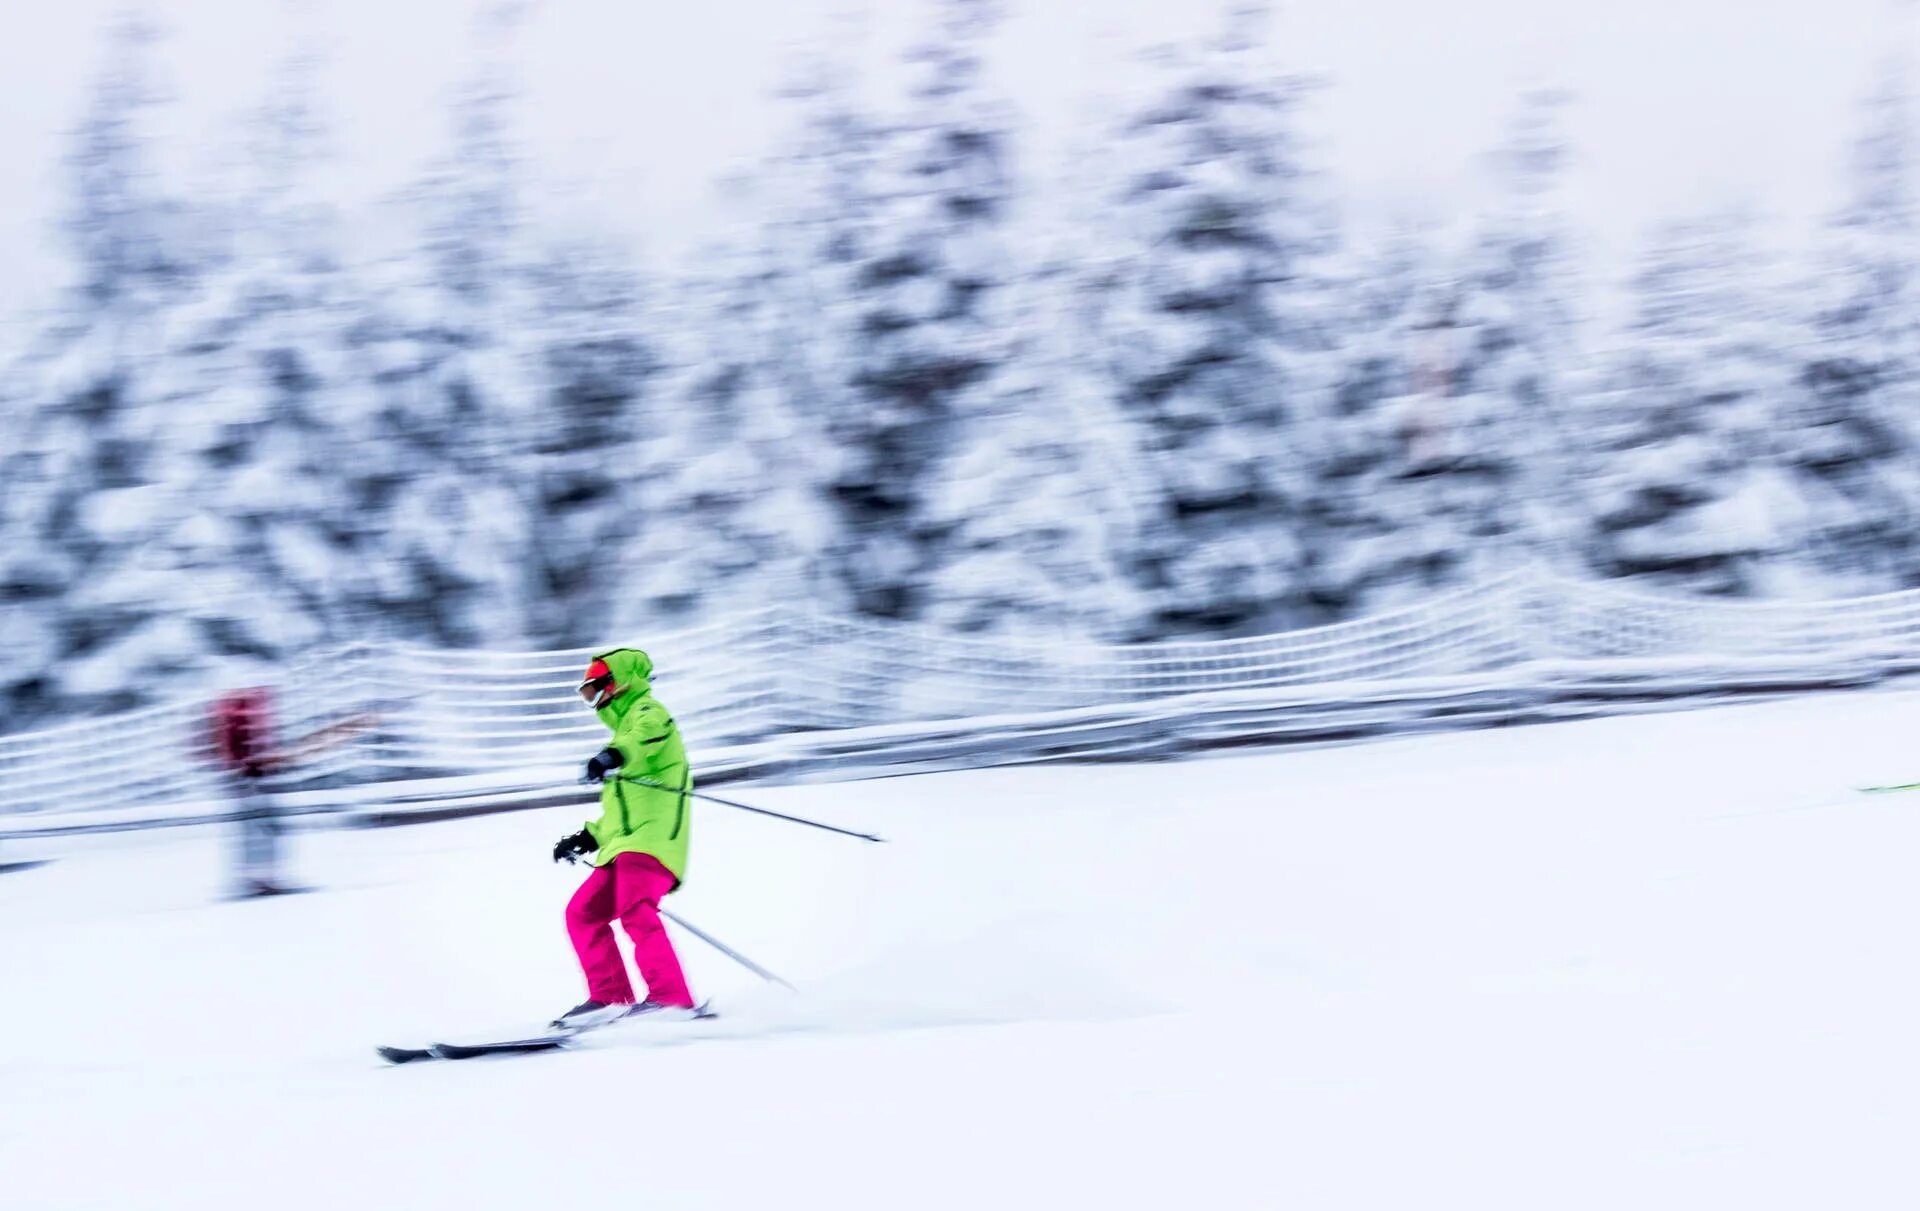 Лыжи. Человек на лыжах. Лыжи снежок. Беговые лыжи обои. Skiing track